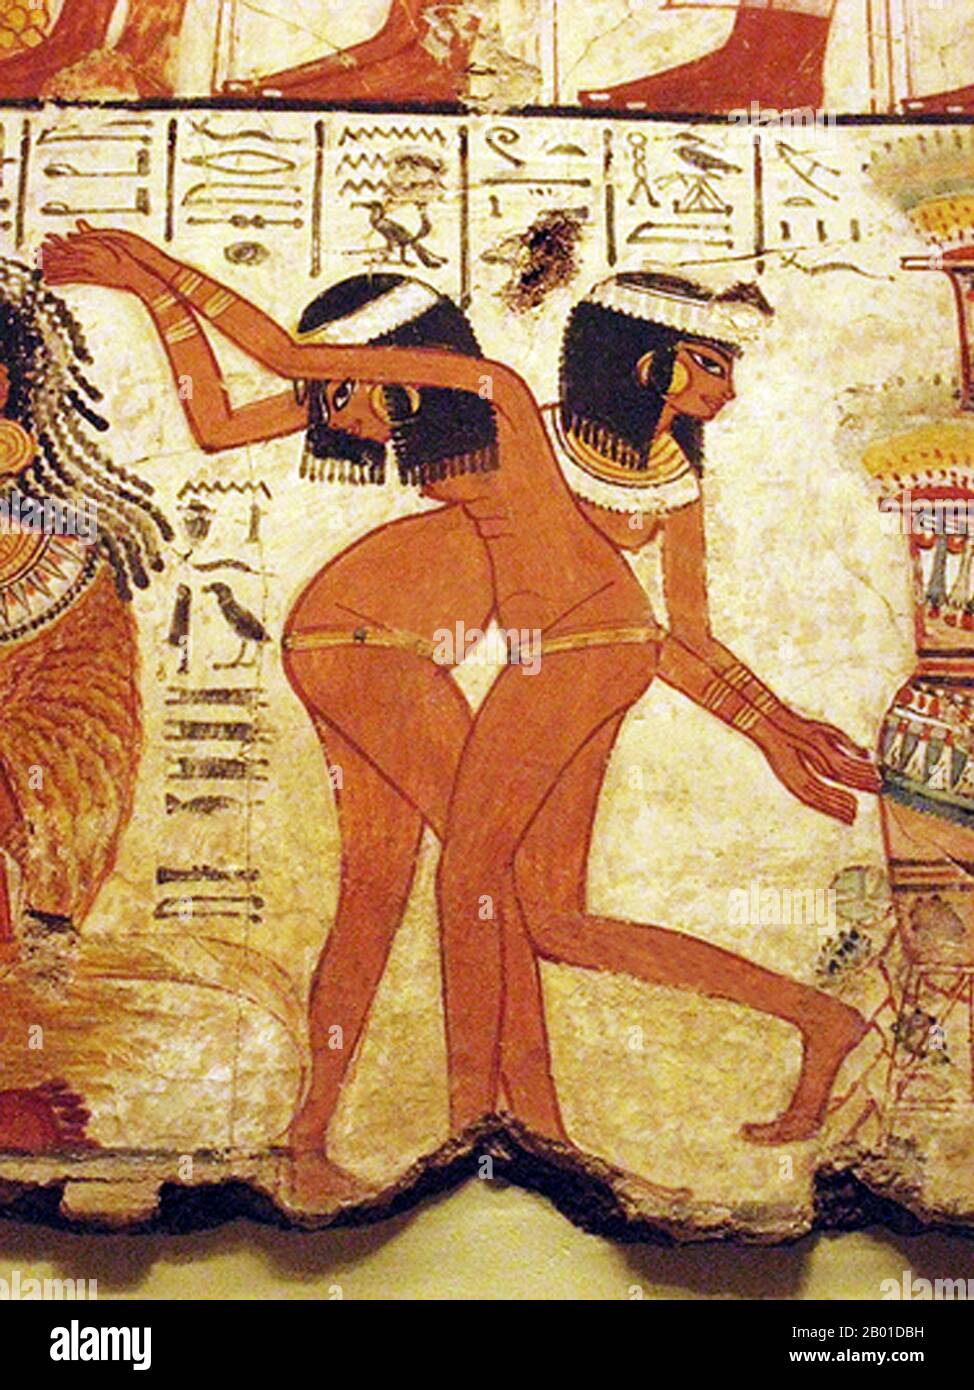 Égypte : fresque de Temple de deux filles dansant, tombe de Nebamun, c. 1350 BCE. Nebamun (fl. 1350 BCE) était un haut fonctionnaire de rang intermédiaire pendant la période du Nouveau Royaume dans l'Égypte ancienne, servant comme un scribe et comptable de grain au complexe du temple de dieu Amun près de Thèbes (Louxor moderne). Dans l'Egypte ancienne, le divertissement par les danseurs était commun, mais la danse mixte de genre n'est pas représentée dans les peintures murales et les fresques. La danse égyptienne peut avoir été influencée par la tradition nubienne, qui est devenue très populaire à Rome pendant les jours de l'empire, et est encore vivante dans certaines parties du Soudan aujourd'hui. Banque D'Images